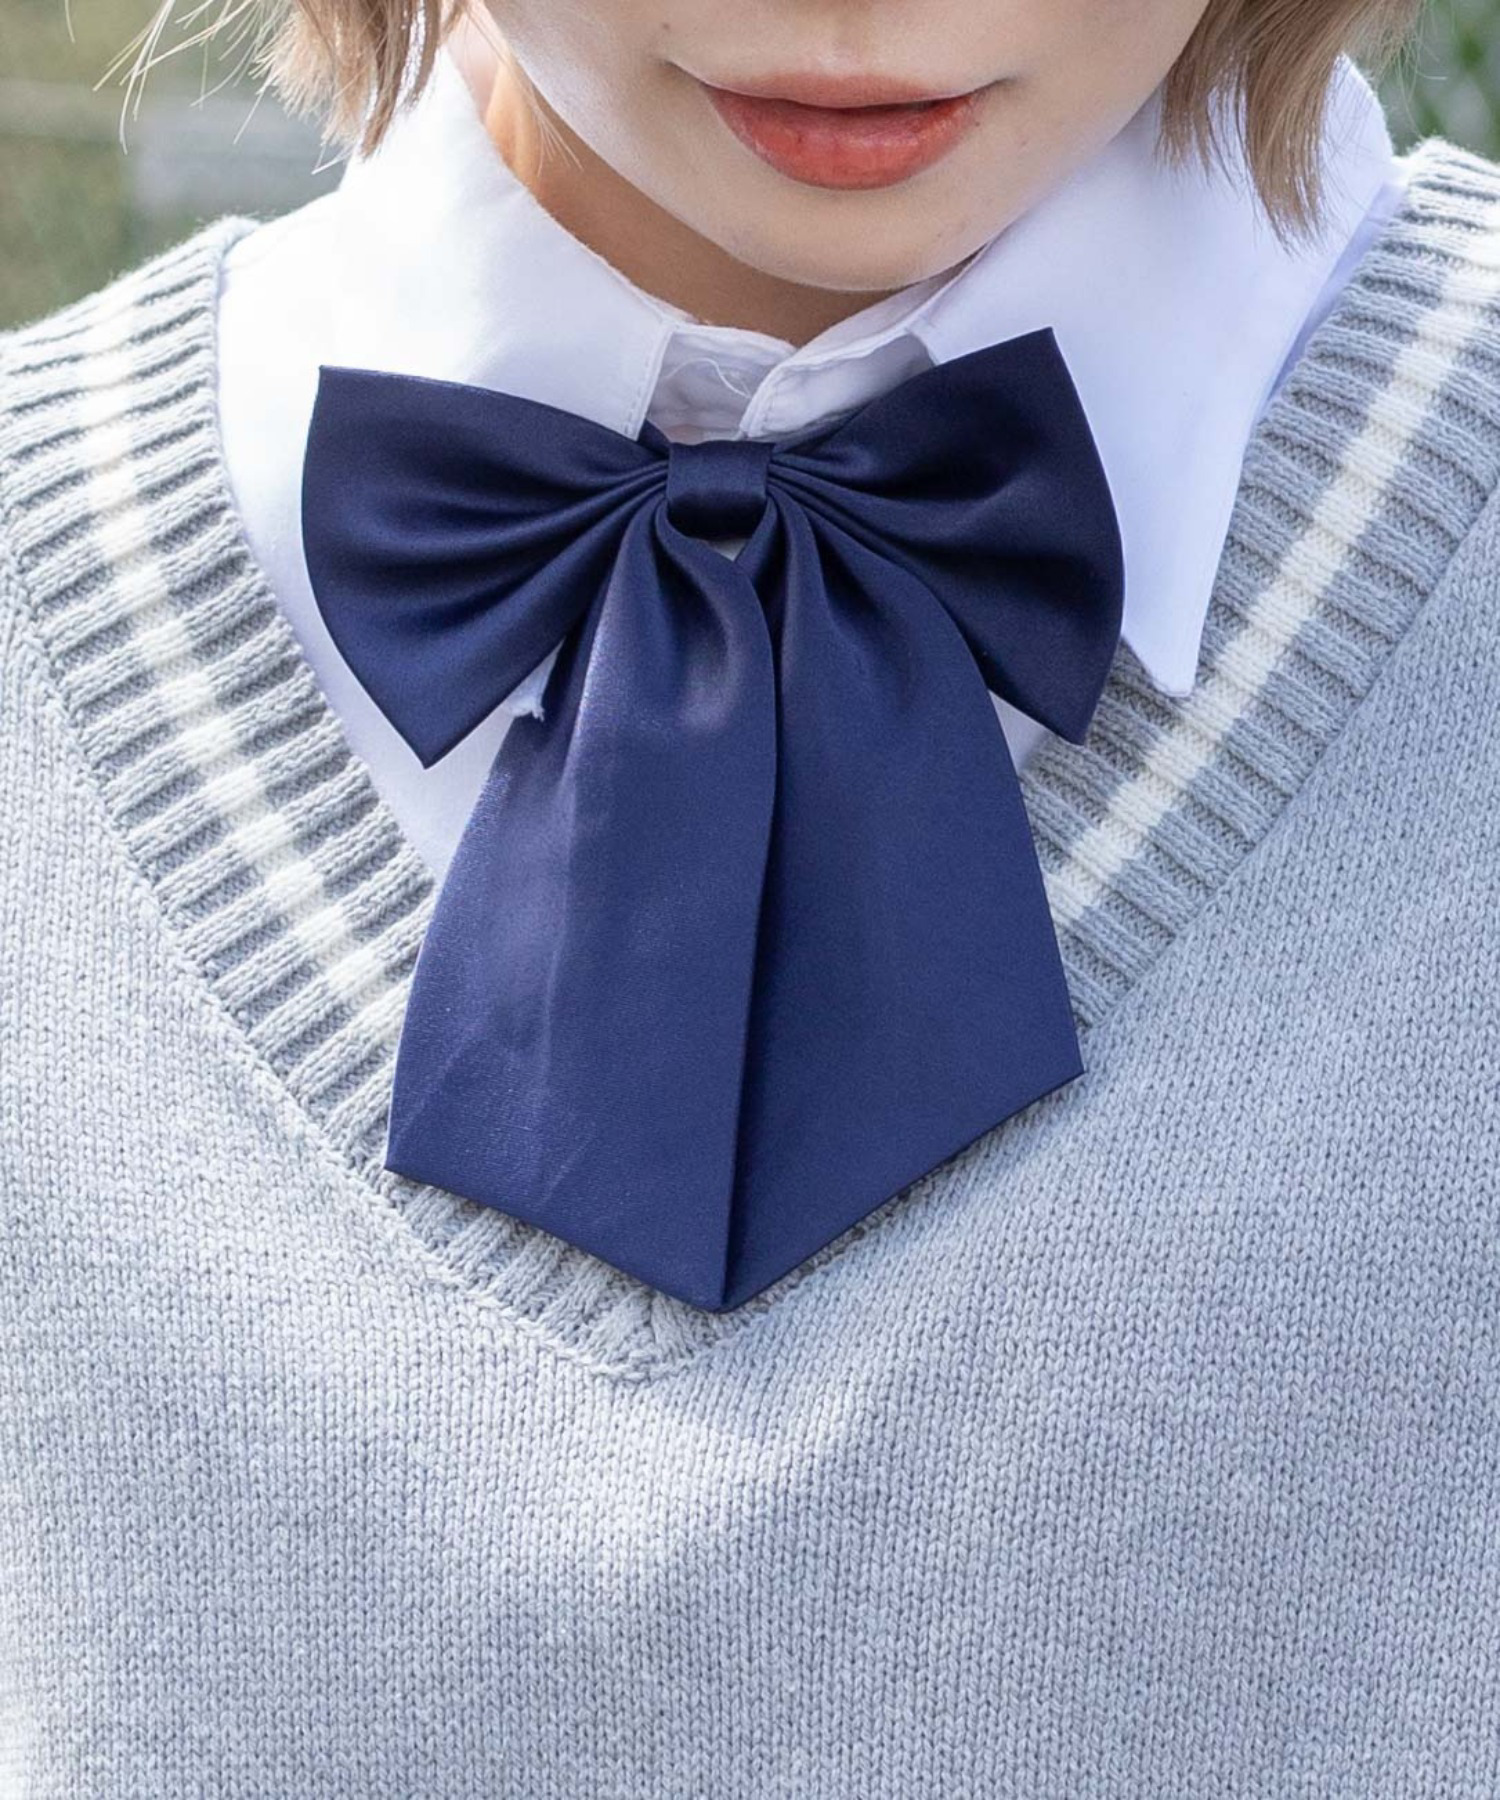 新品 紺色 制服リボン スクールリボン 三つ折り - コスチューム・コスプレ